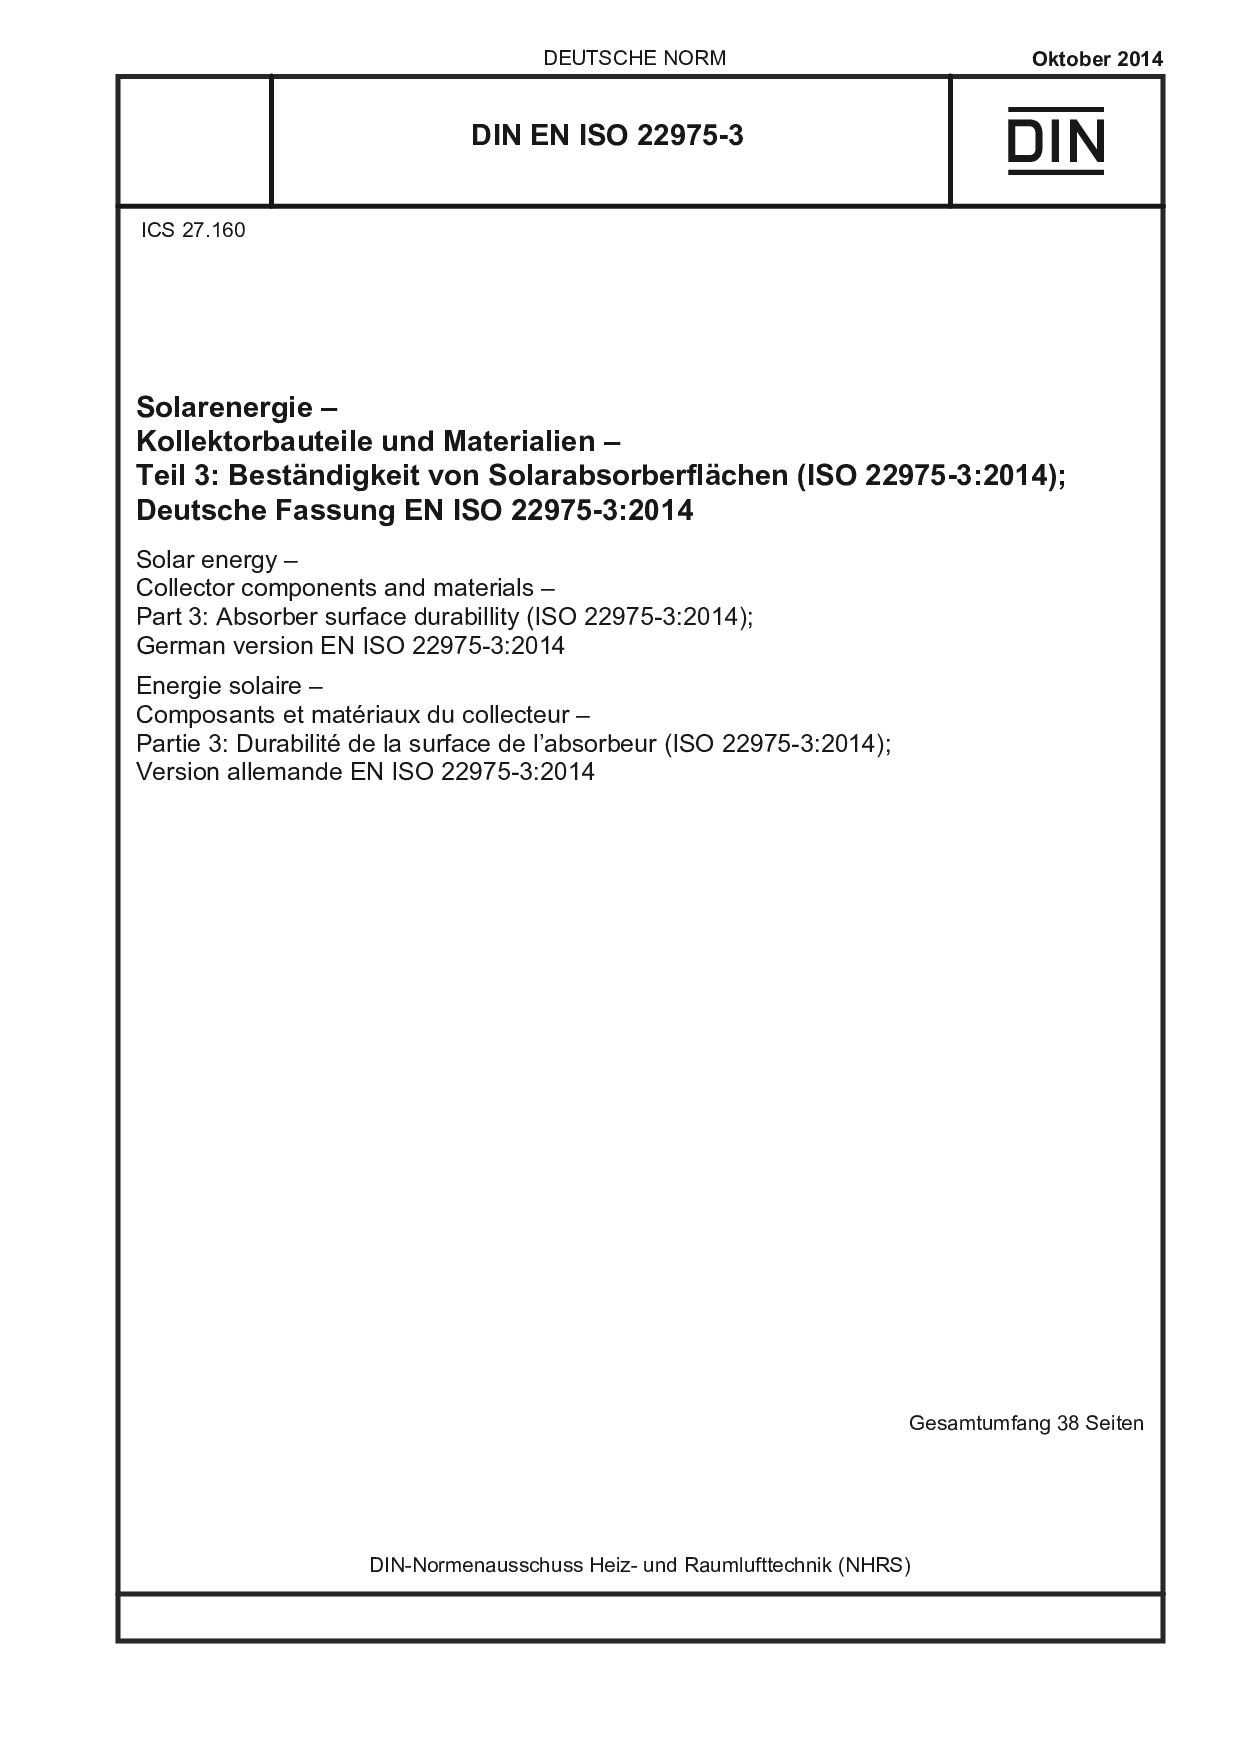 DIN EN ISO 22975-3:2014